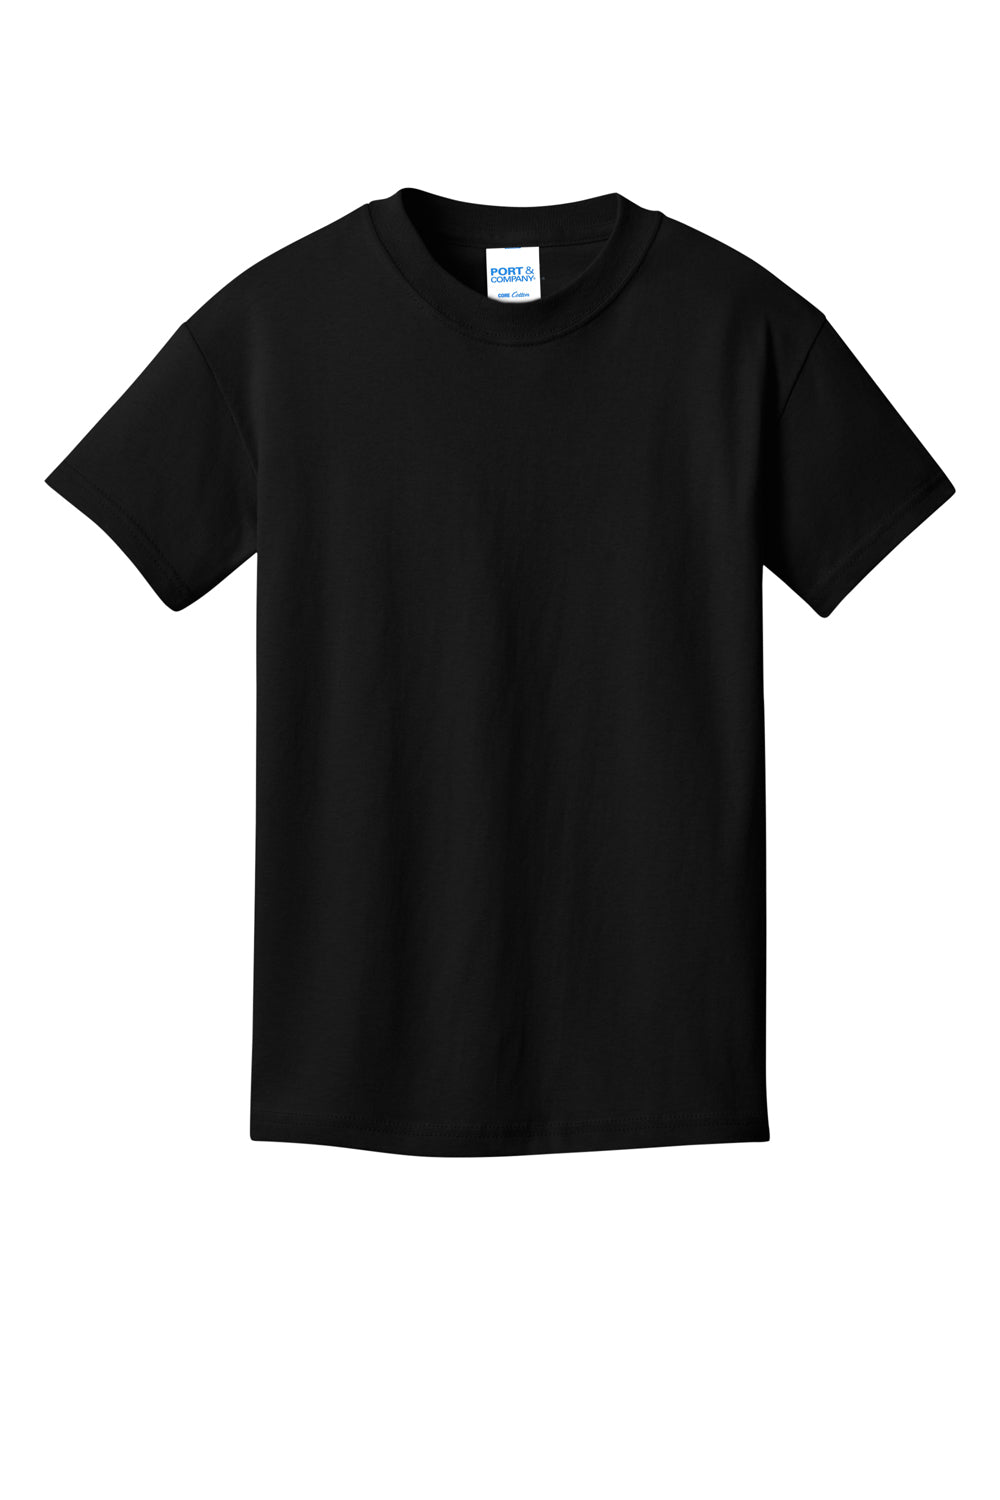 Port & Company PC54YDTG Core Cotton DTG Short Sleeve Crewneck T-Shirt Jet Black Flat Front